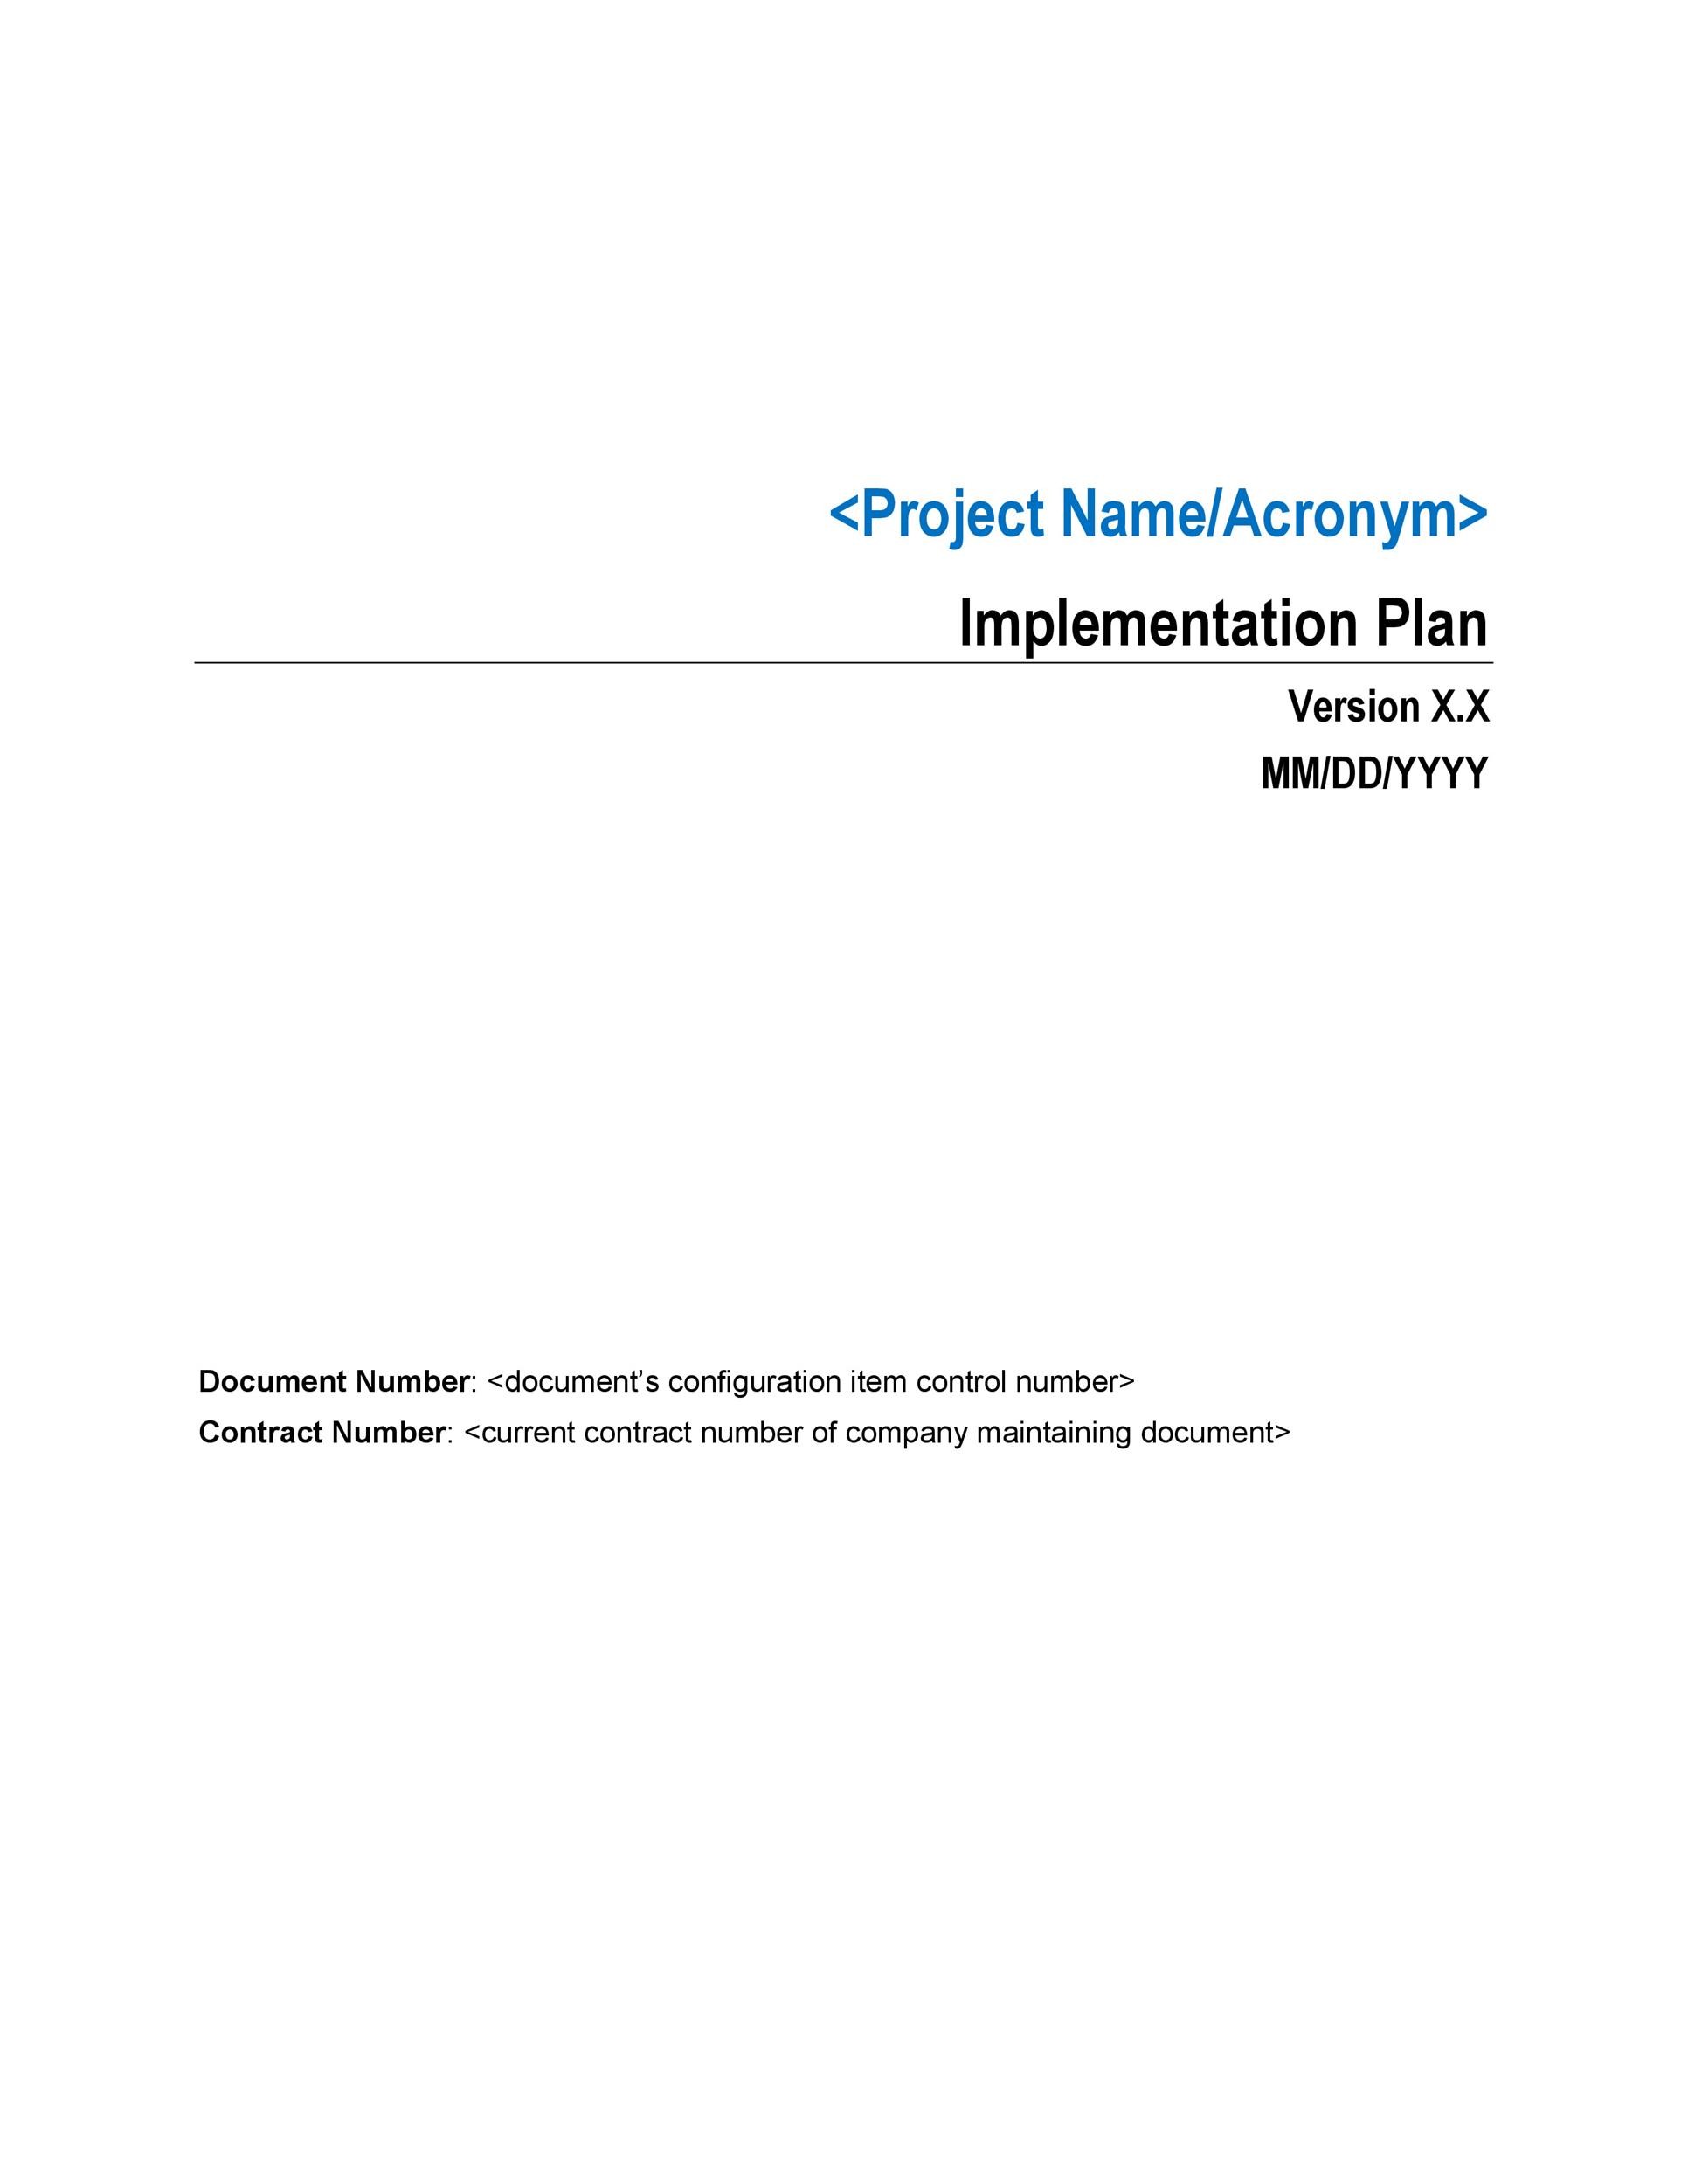 Free implementation plan 24